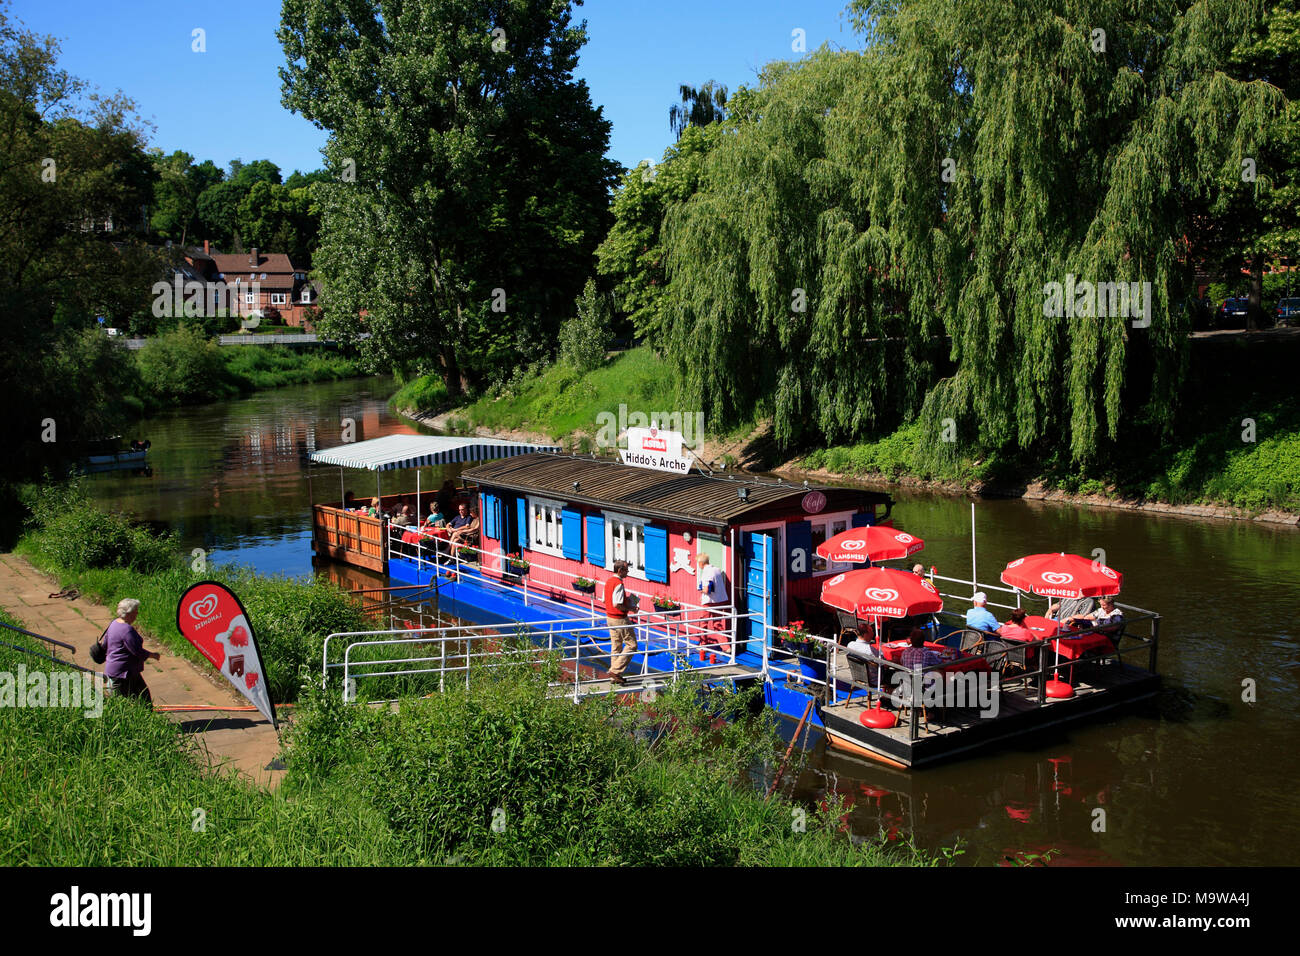 Schwimmbad Restaurant & Cafe HIDDOS ARCHE auf dem Fluss Jeetzel, Hitzacker (Elbe), Niedersachsen, Deutschland, Europa Stockfoto